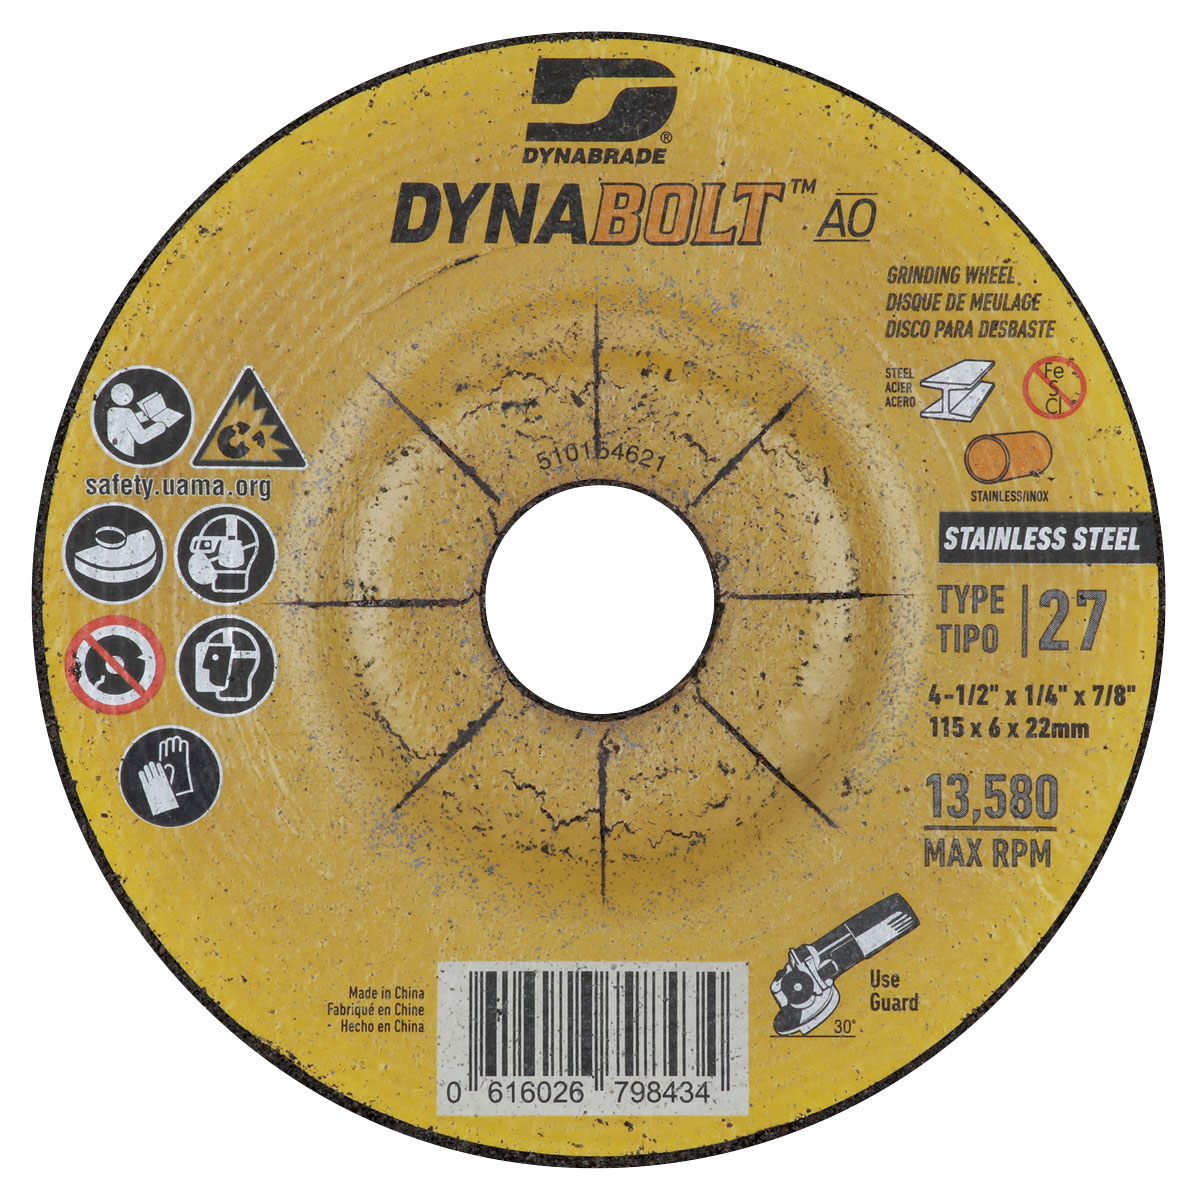 DynaBolt AO SS 4.5" x 1/4" x 7/8" T27 Grinding Wheel